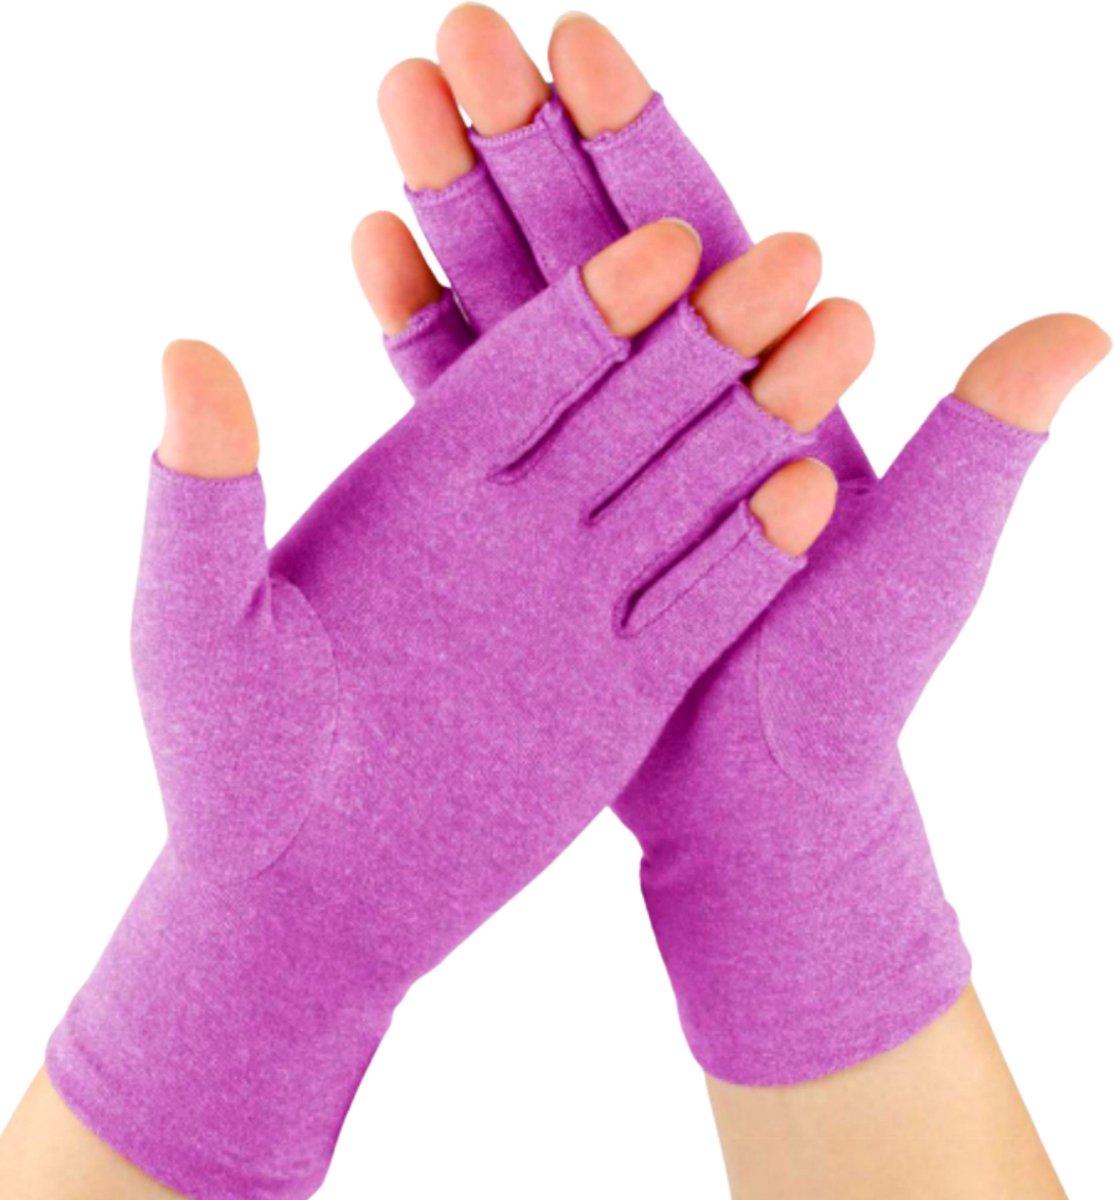 KANGKA® Reuma Compressie Handschoenen Maat L voor Artrose, Reuma, Artritis, RSI, CTS - Open Vingertoppen - Paars - Unisex